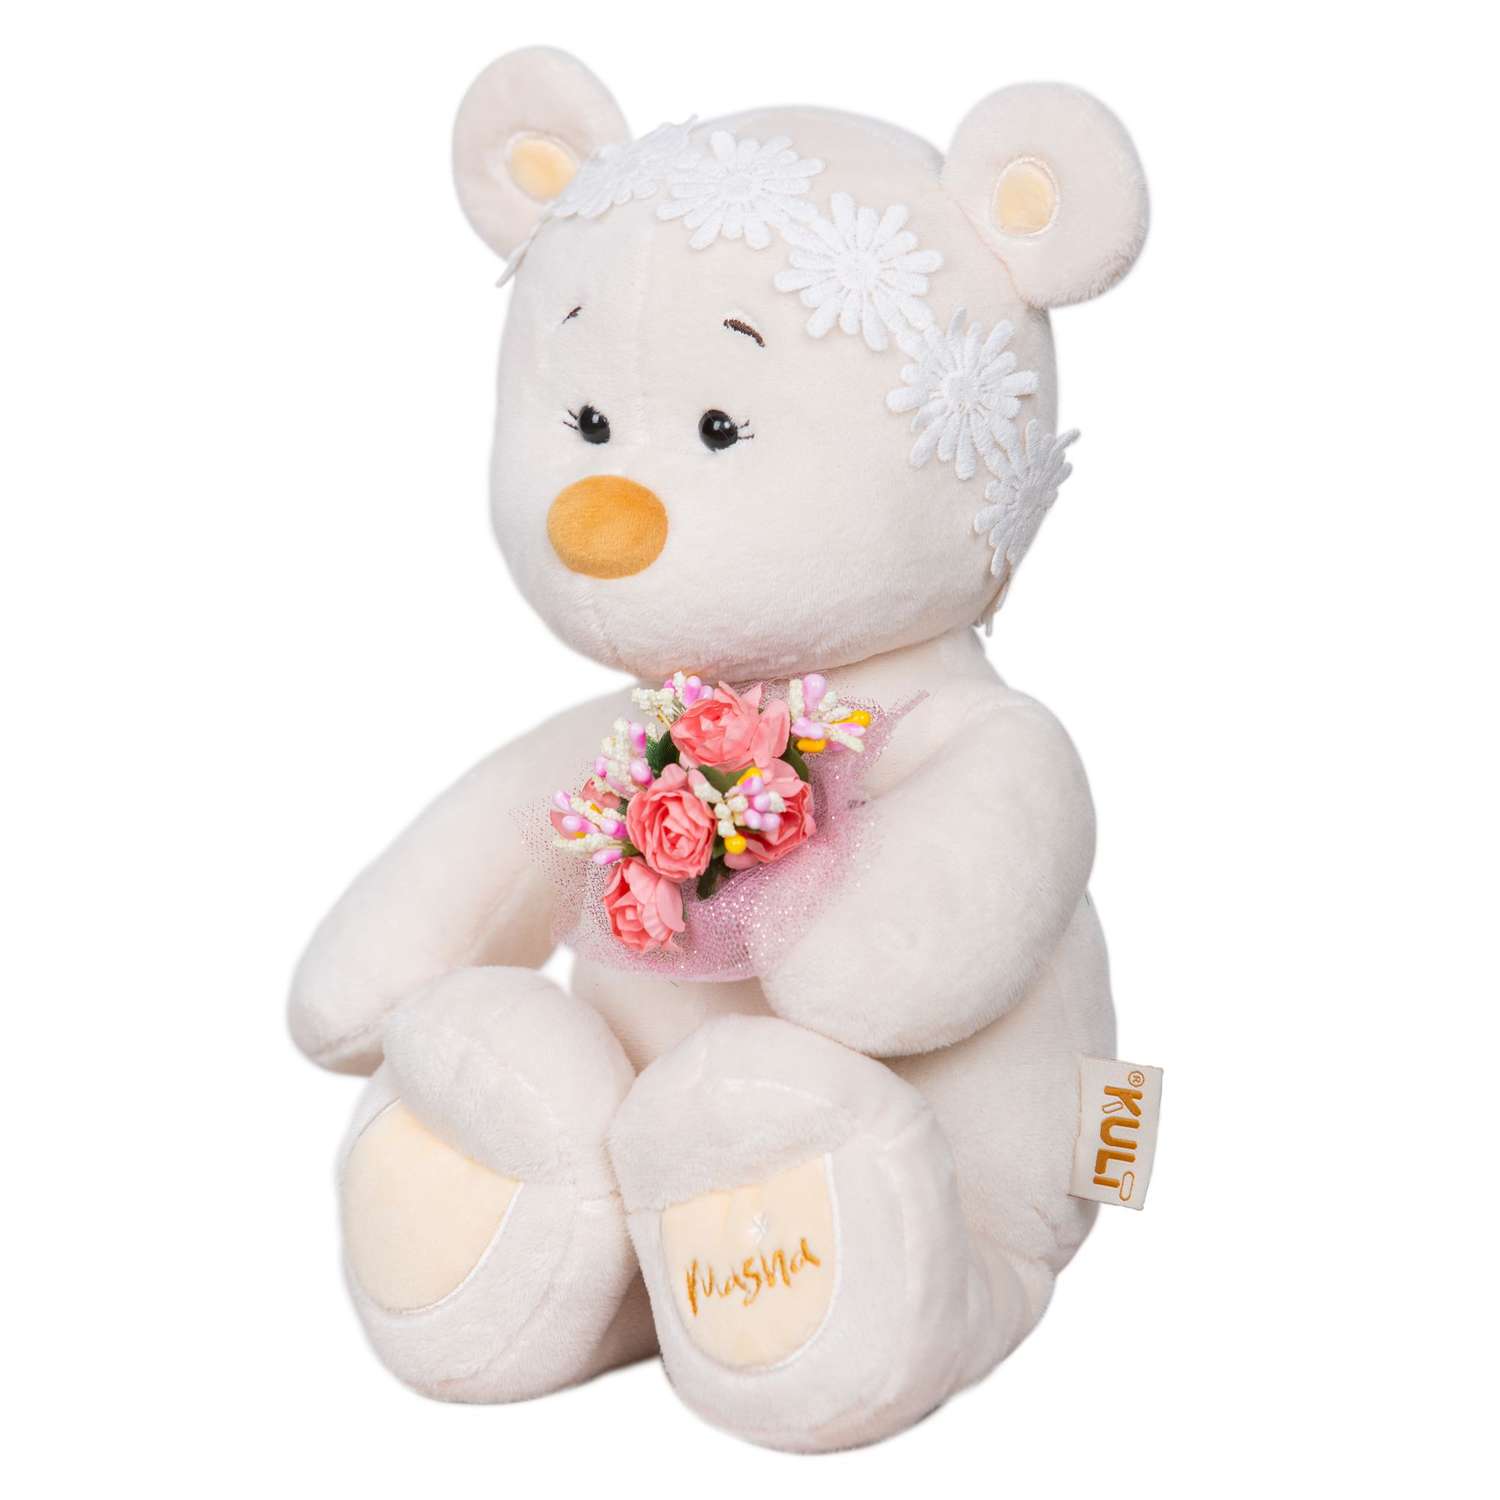 Мягкая игрушка KULT of toys плюшевый медведь в подарочной коробки для девочки masha с цветами 30 см - фото 2